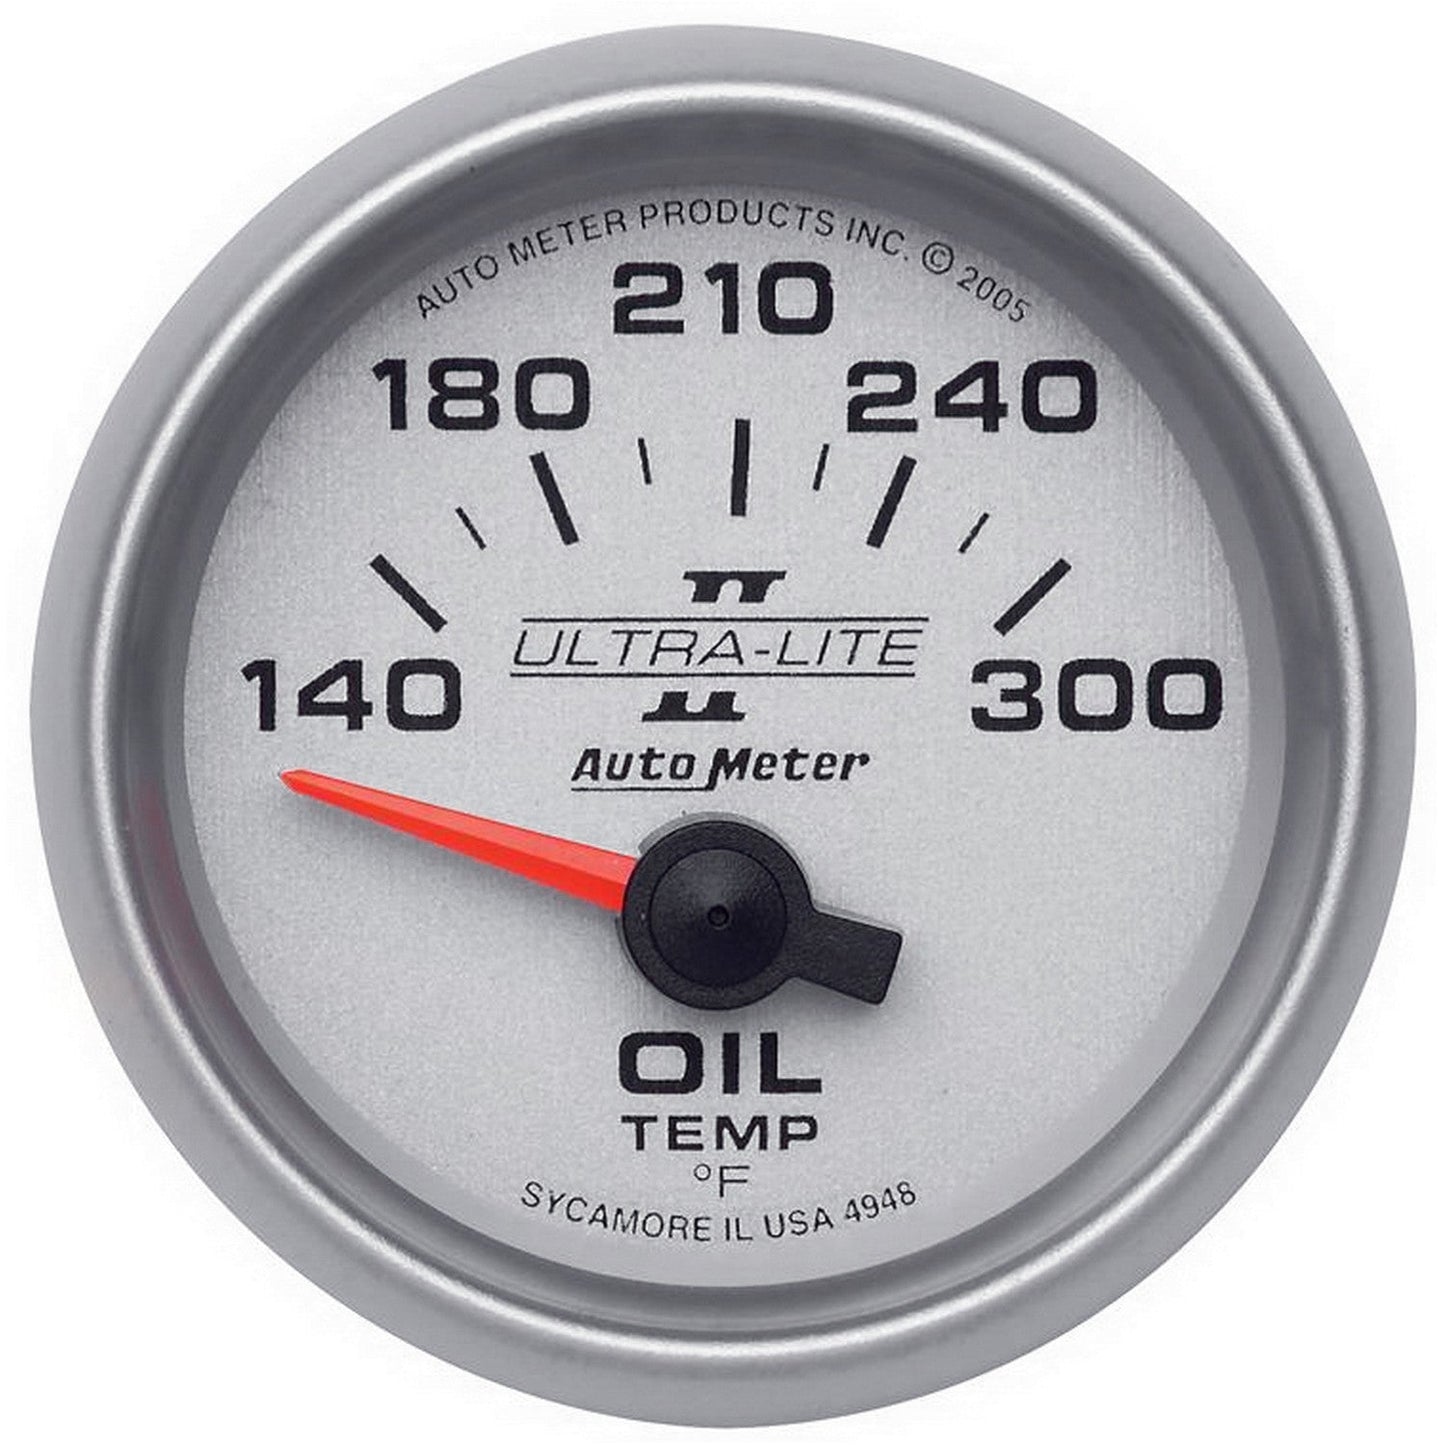 AutoMeter - 2-1/16" OIL TEMPERATURE, 140-300 °F, AIR-CORE, ULTRA-LITE II (4948)